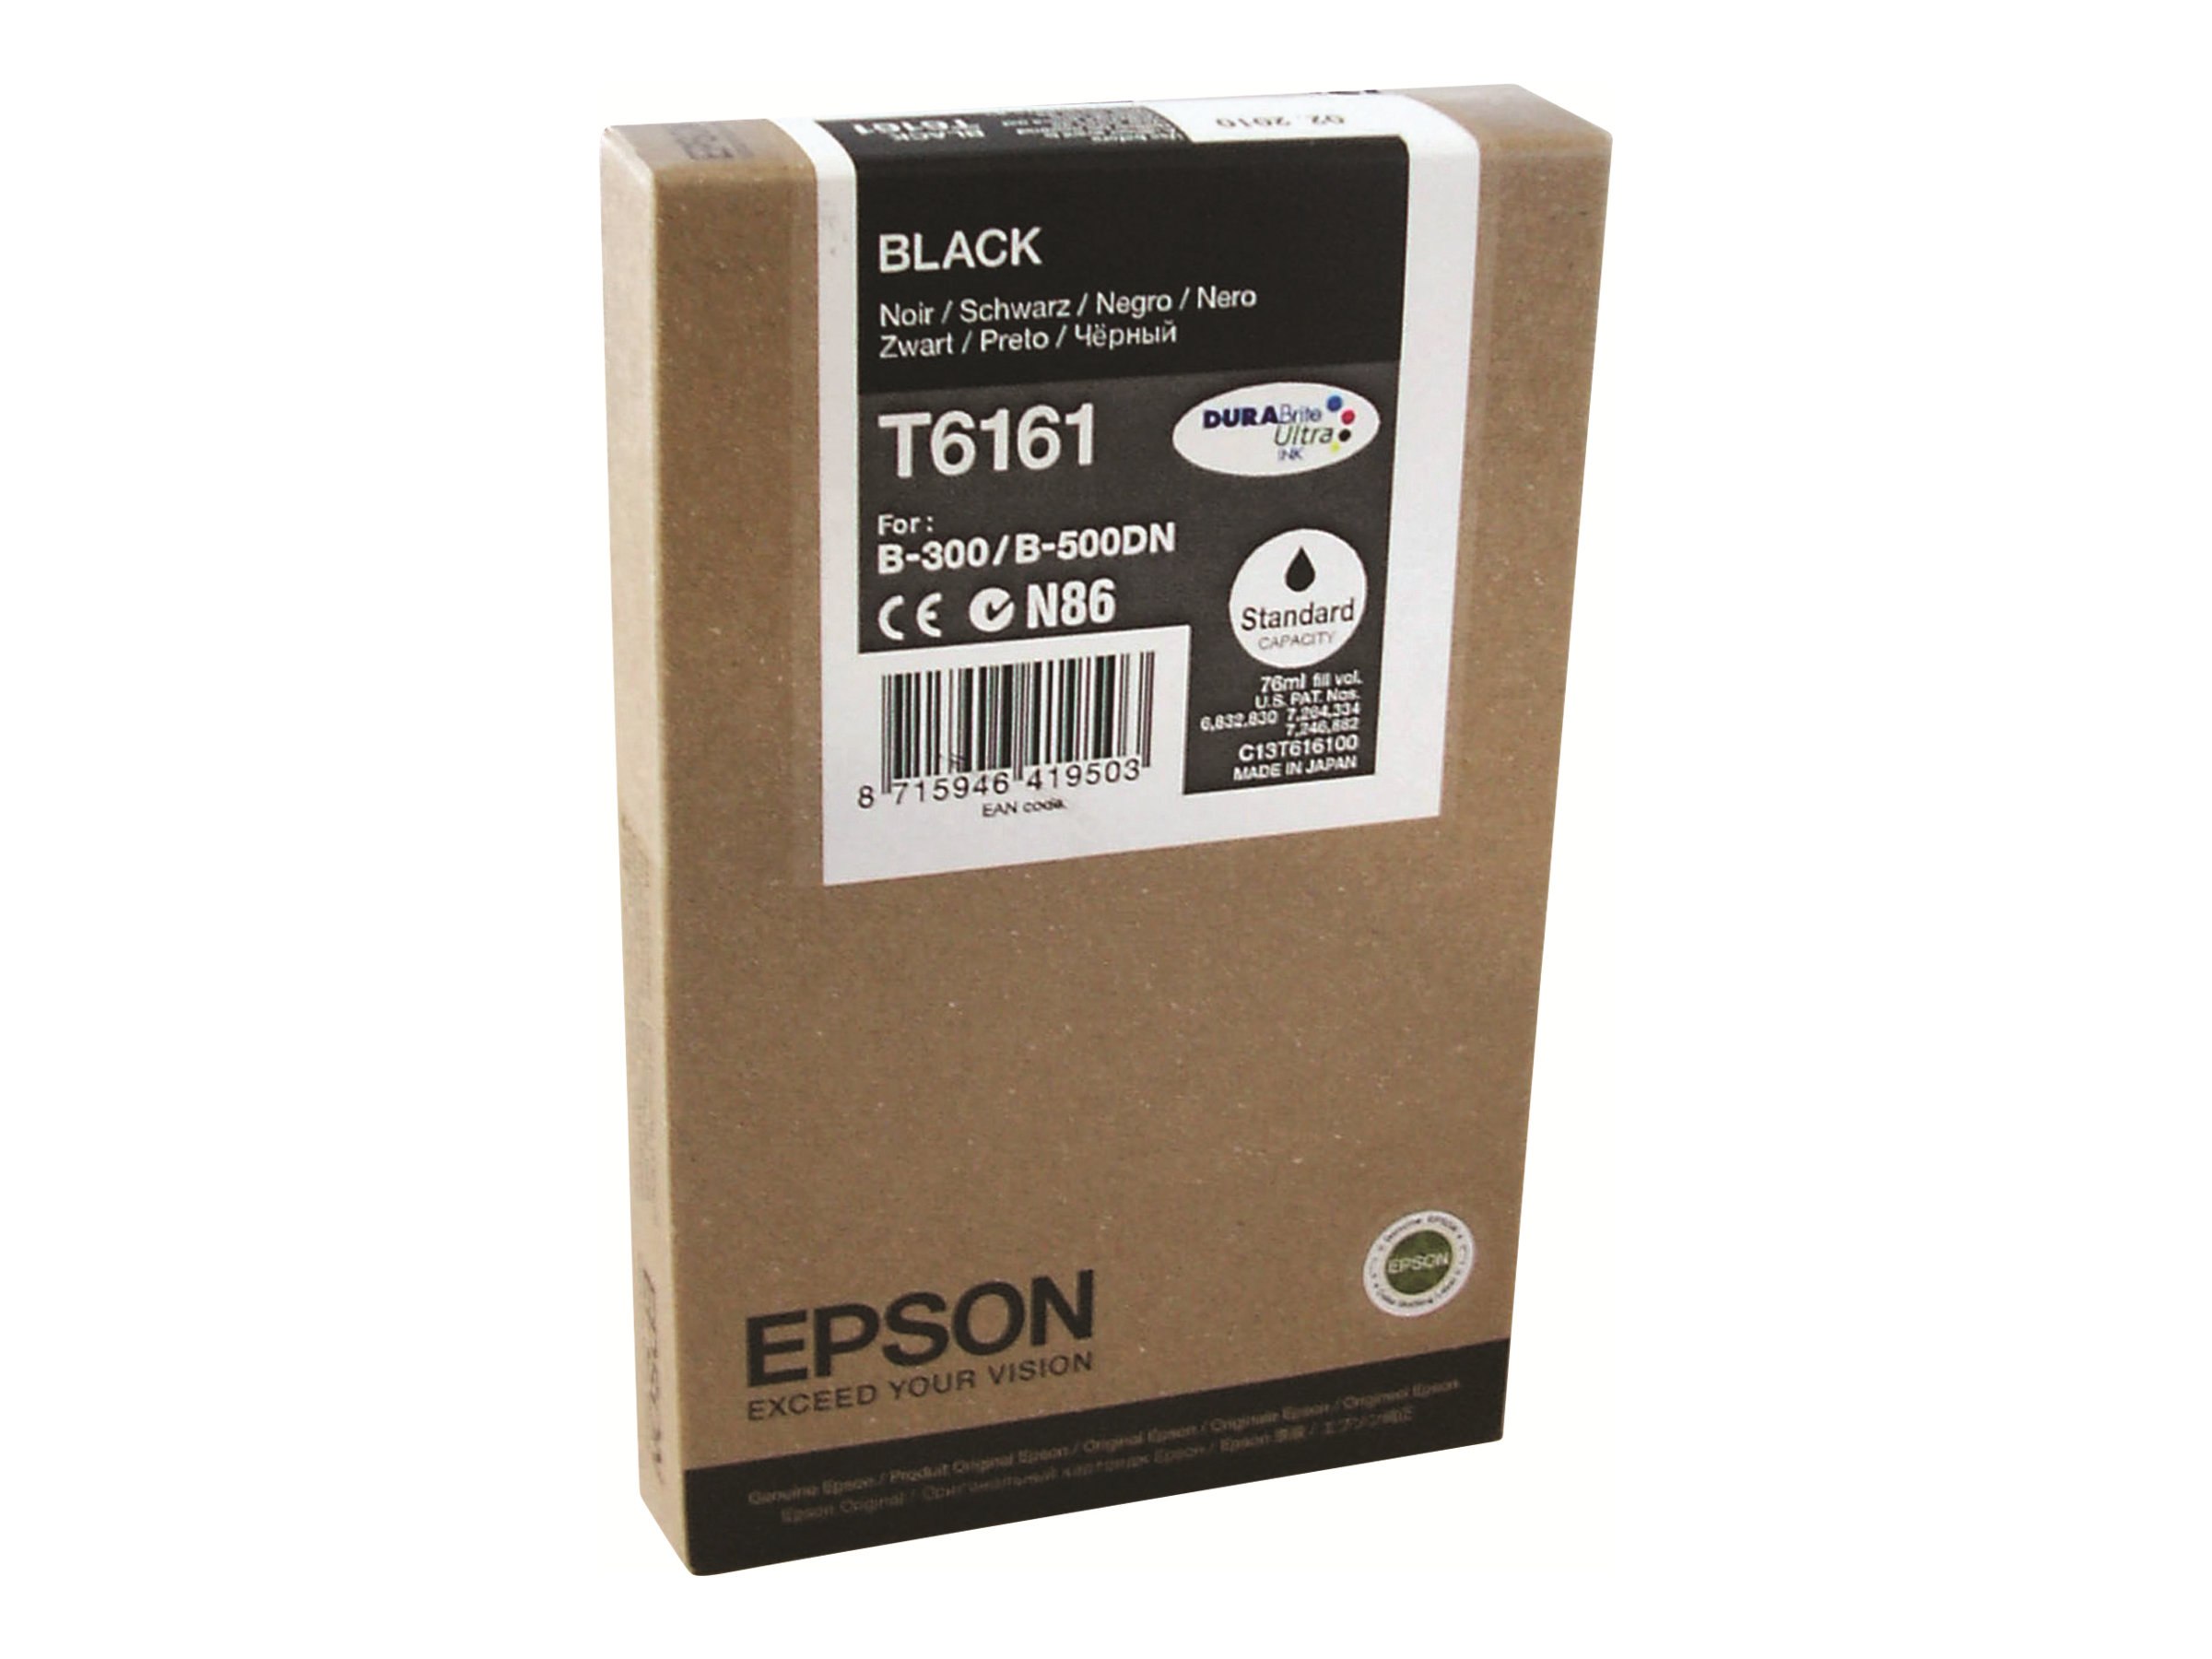 Epson T6161 - 76 ml - noir - original - cartouche d'encre - pour B 300, 310N, 500DN, 510DN - C13T616100 - Cartouches d'imprimante